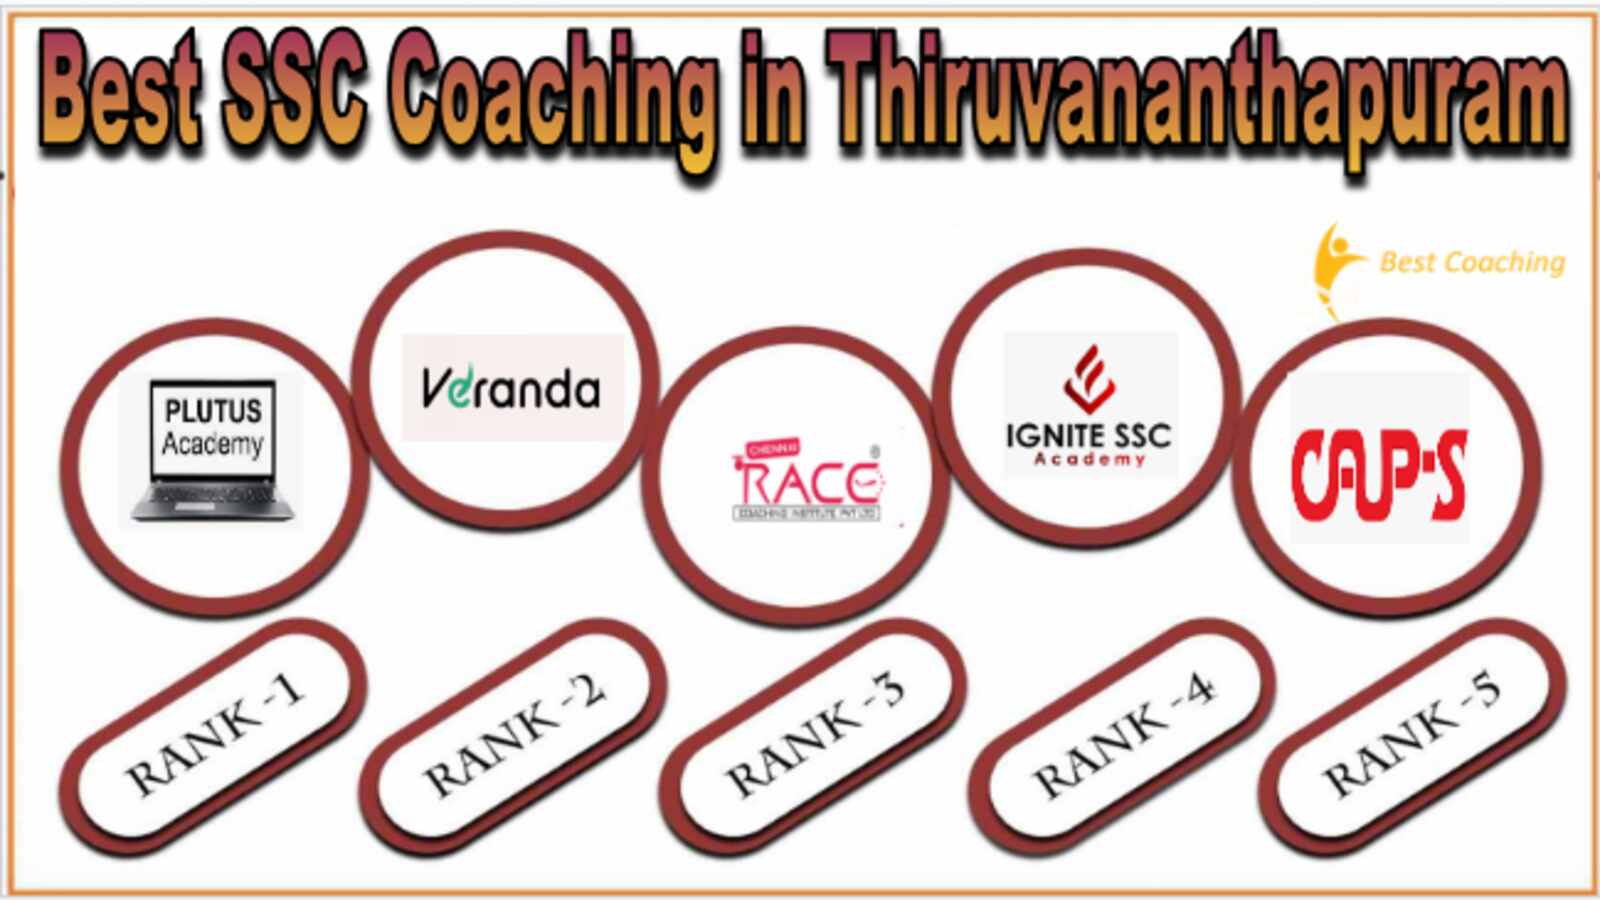 Best SSC Coaching in Thiruvananthapuram